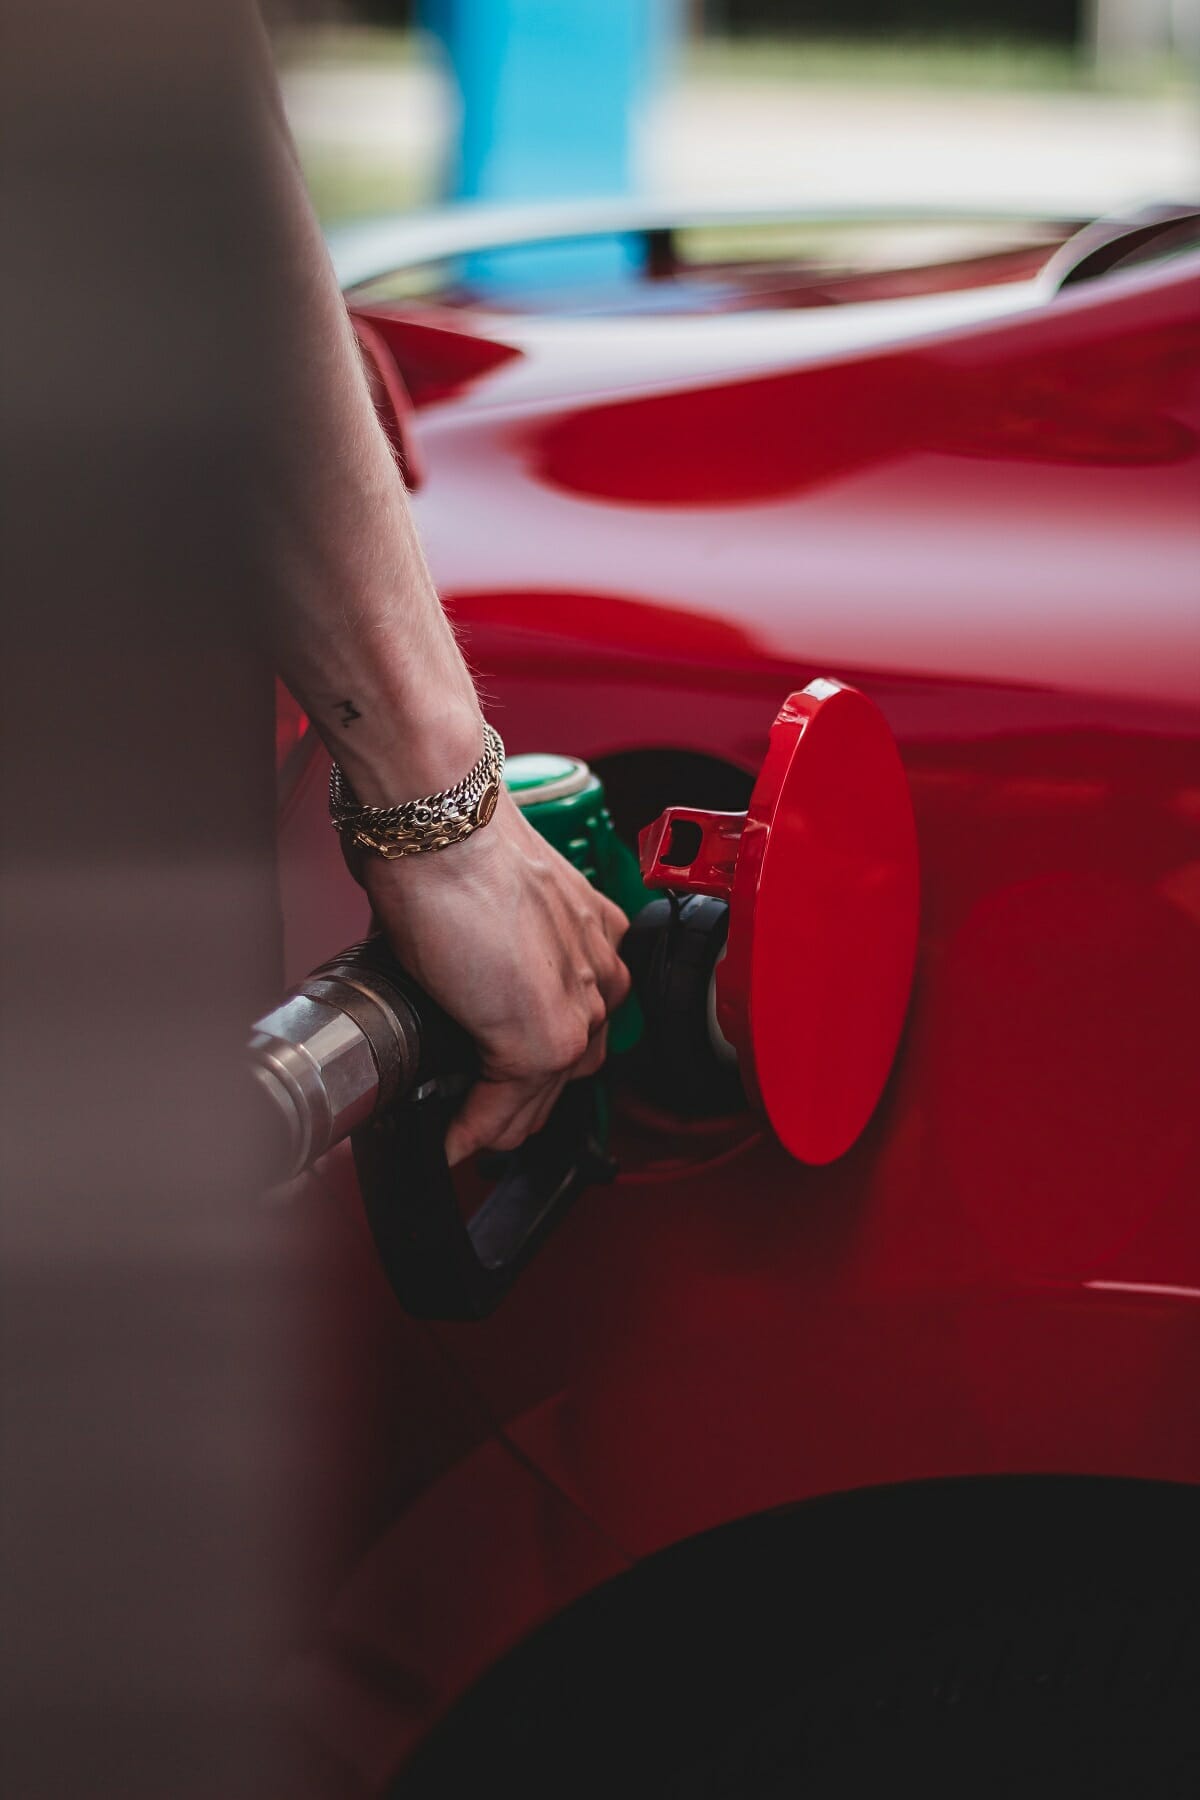 به گفته تحلیلگران، قیمت بنزین ممکن است سال آینده به لیتری 2 دلار برسد